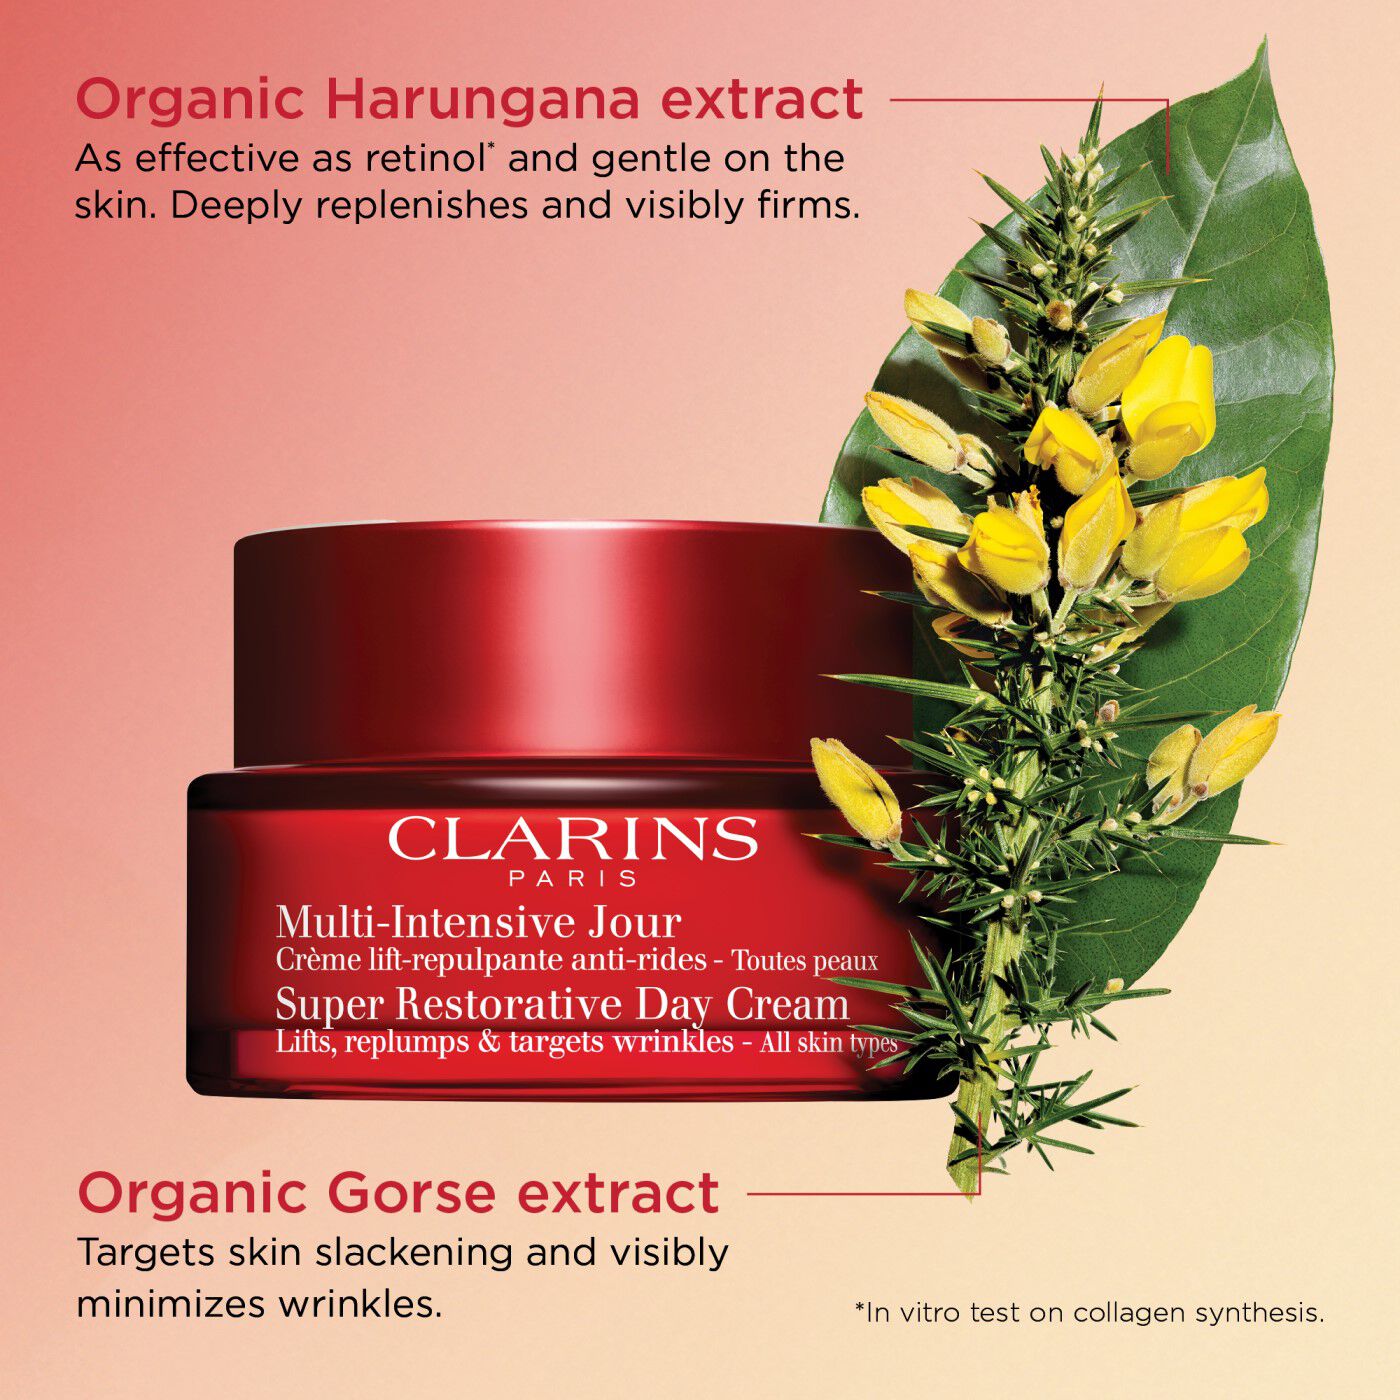 Clarins Super Restorative Day Cream - All Skin Types